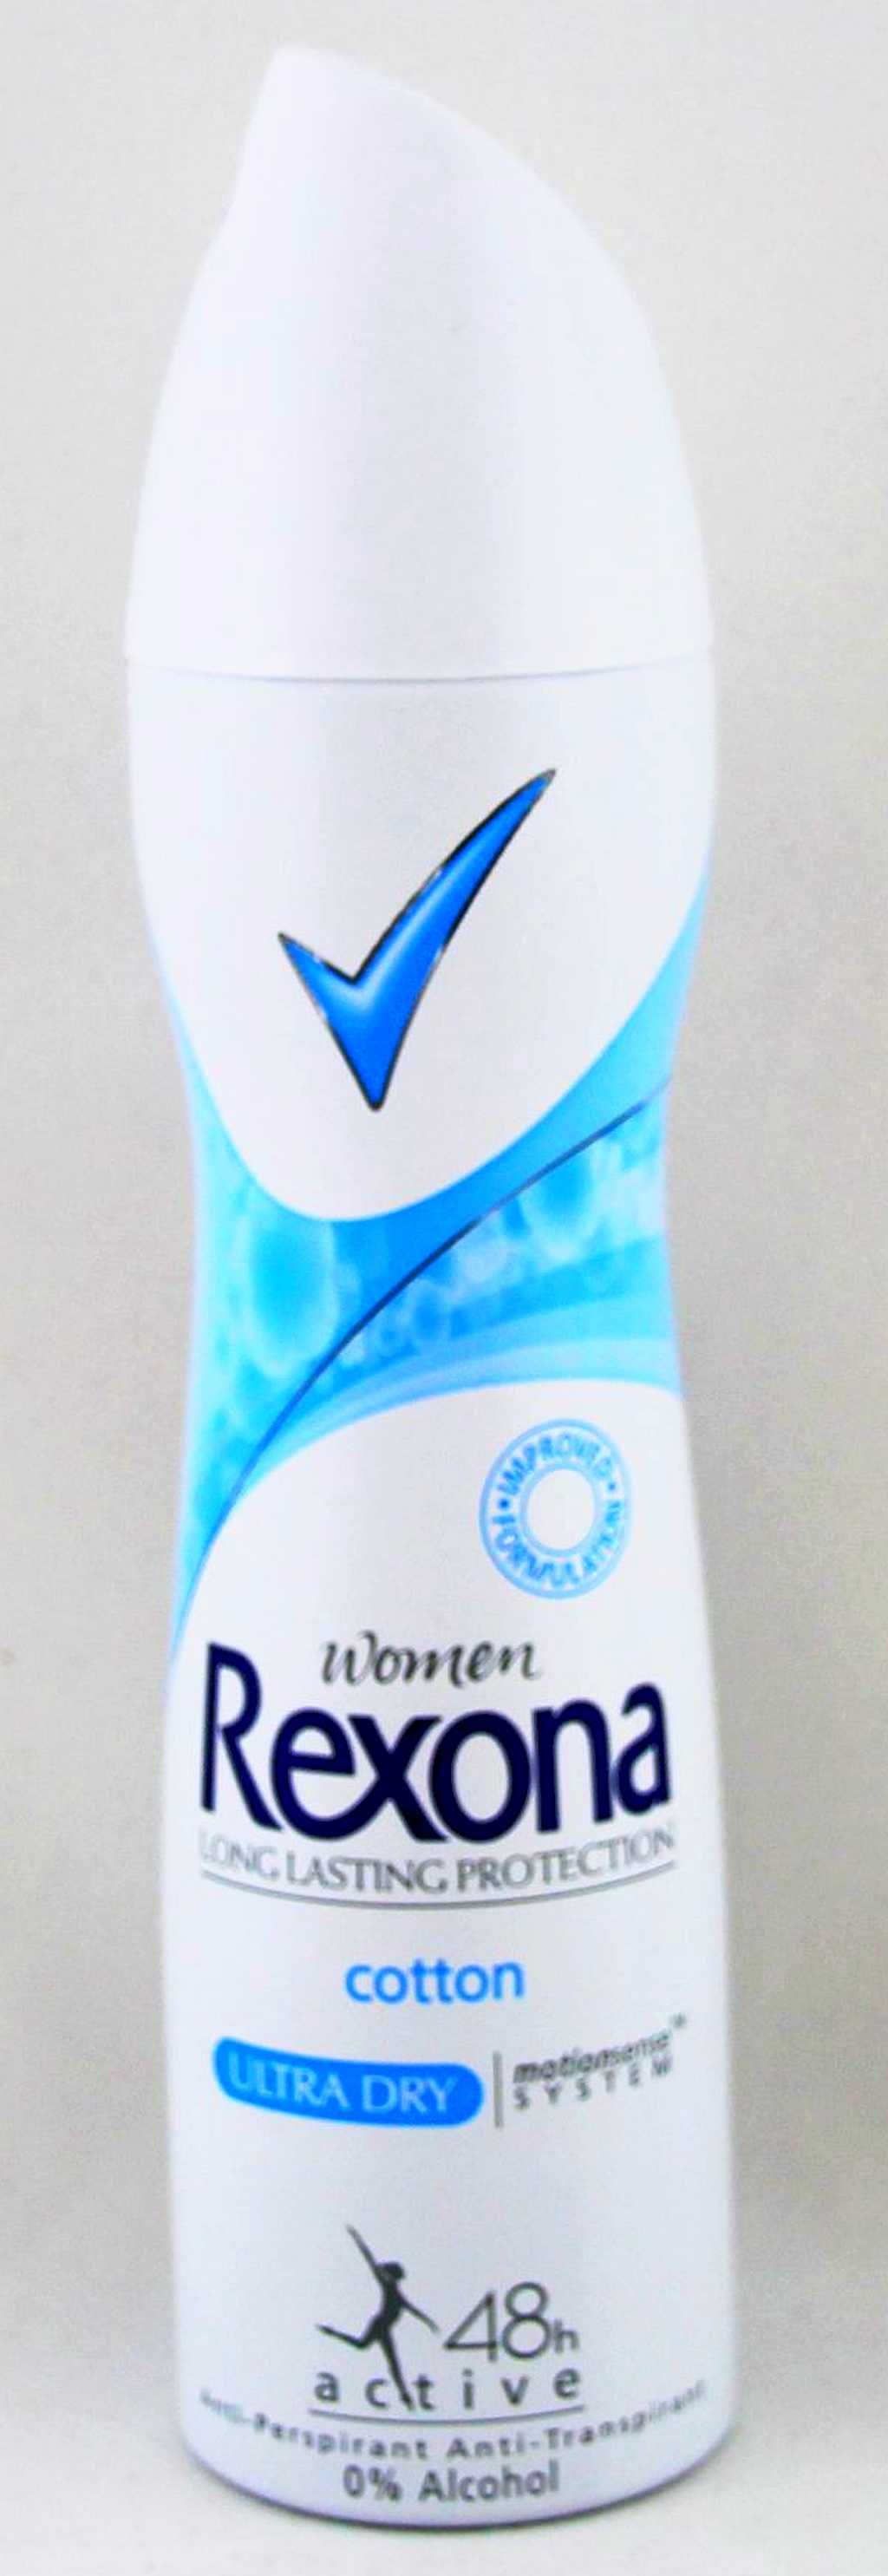 Rexona Cotton Dezodorant damski 150ml - 0% Alkoholu